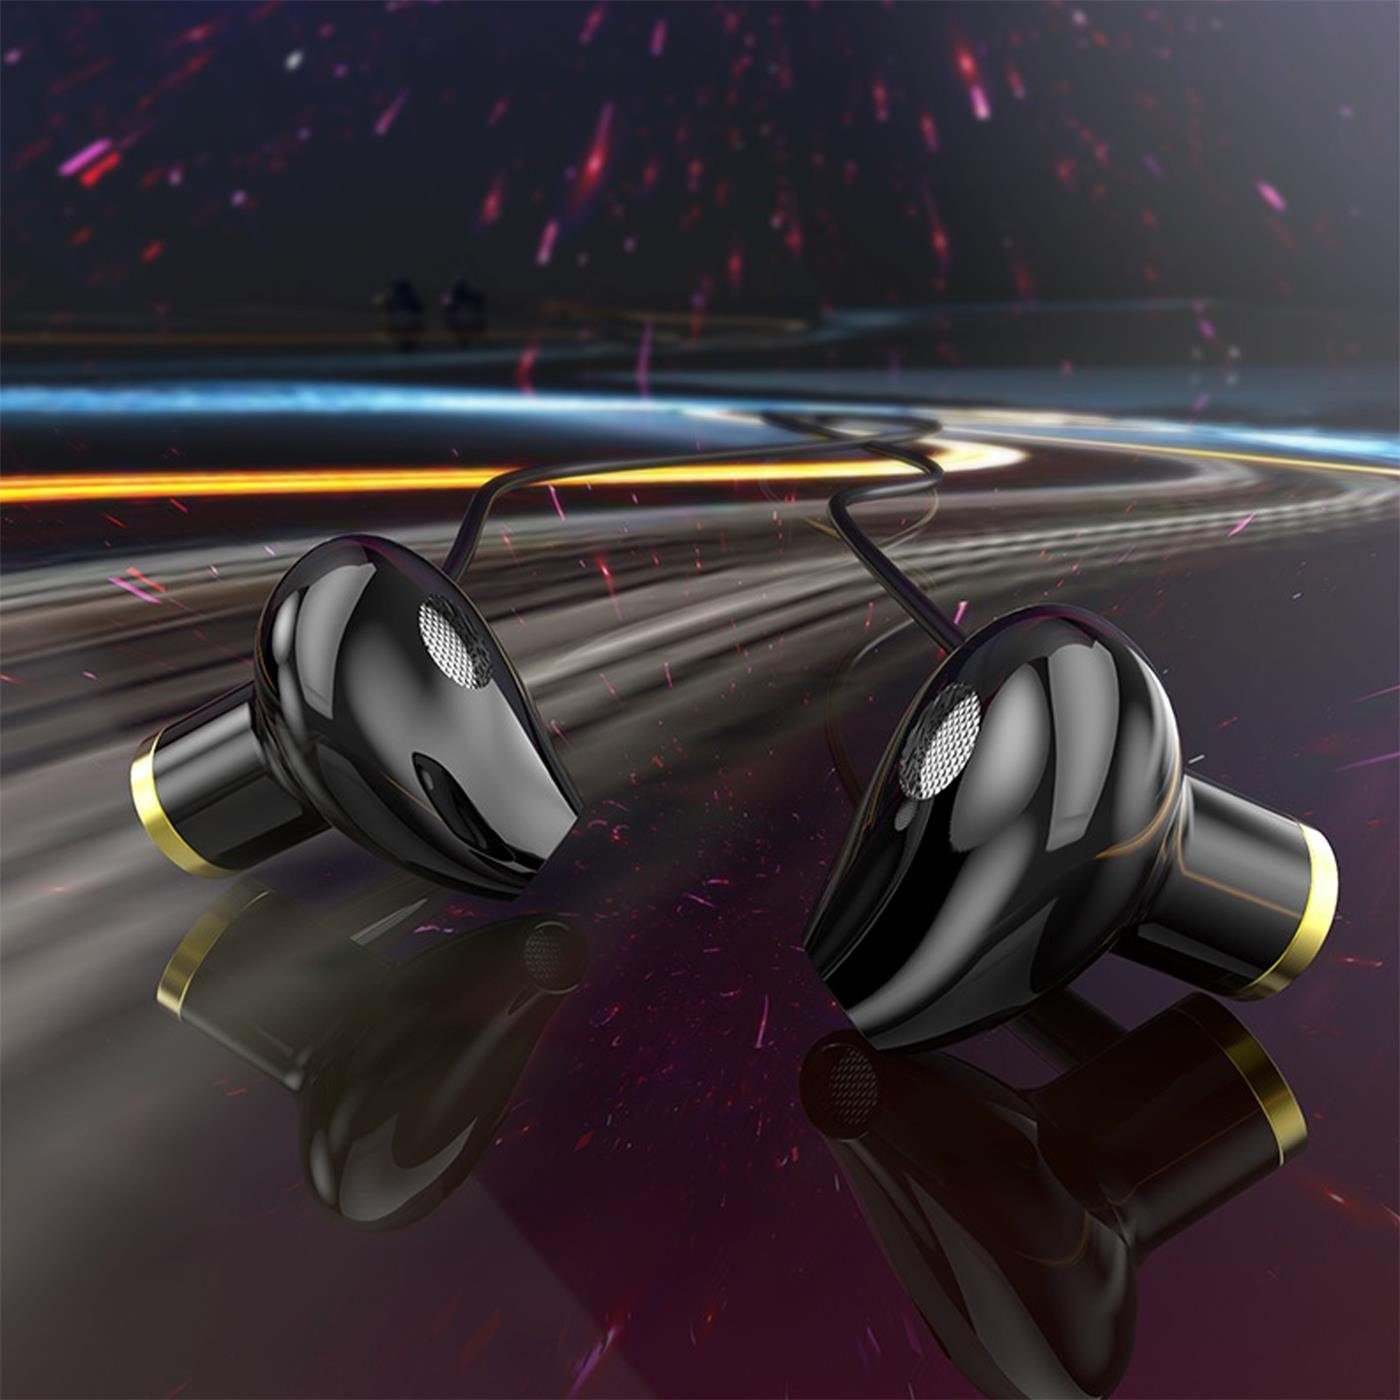 HOCO M47 Canorous 3,5mm Klinke Beats) Ear (Köpfhörer Headset In Schwarz Klinke mm Smartphone-Headset 3.5 mit Mikrofon